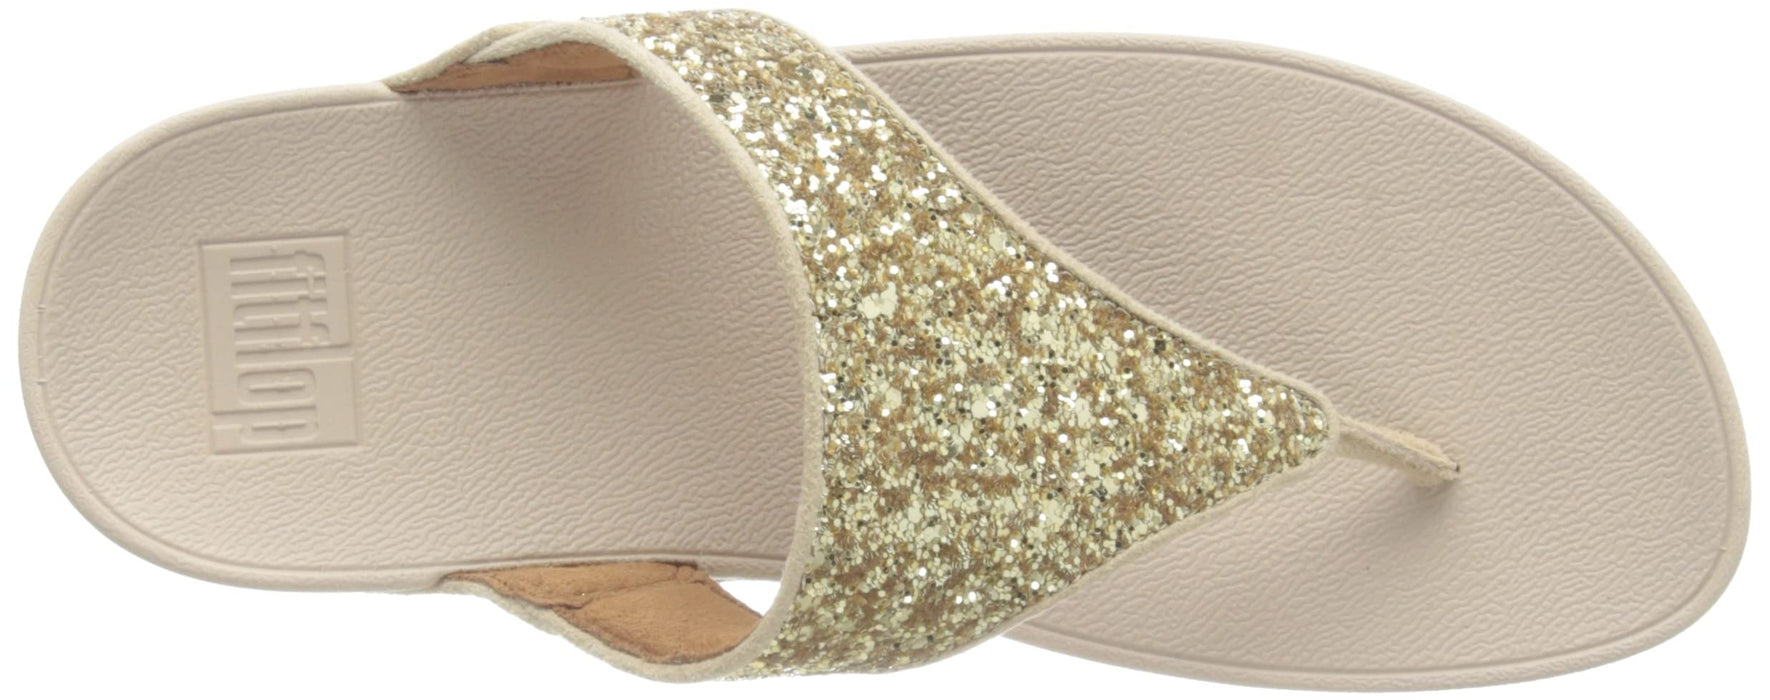 FitFlop Women's Lulu Glitter Sandals